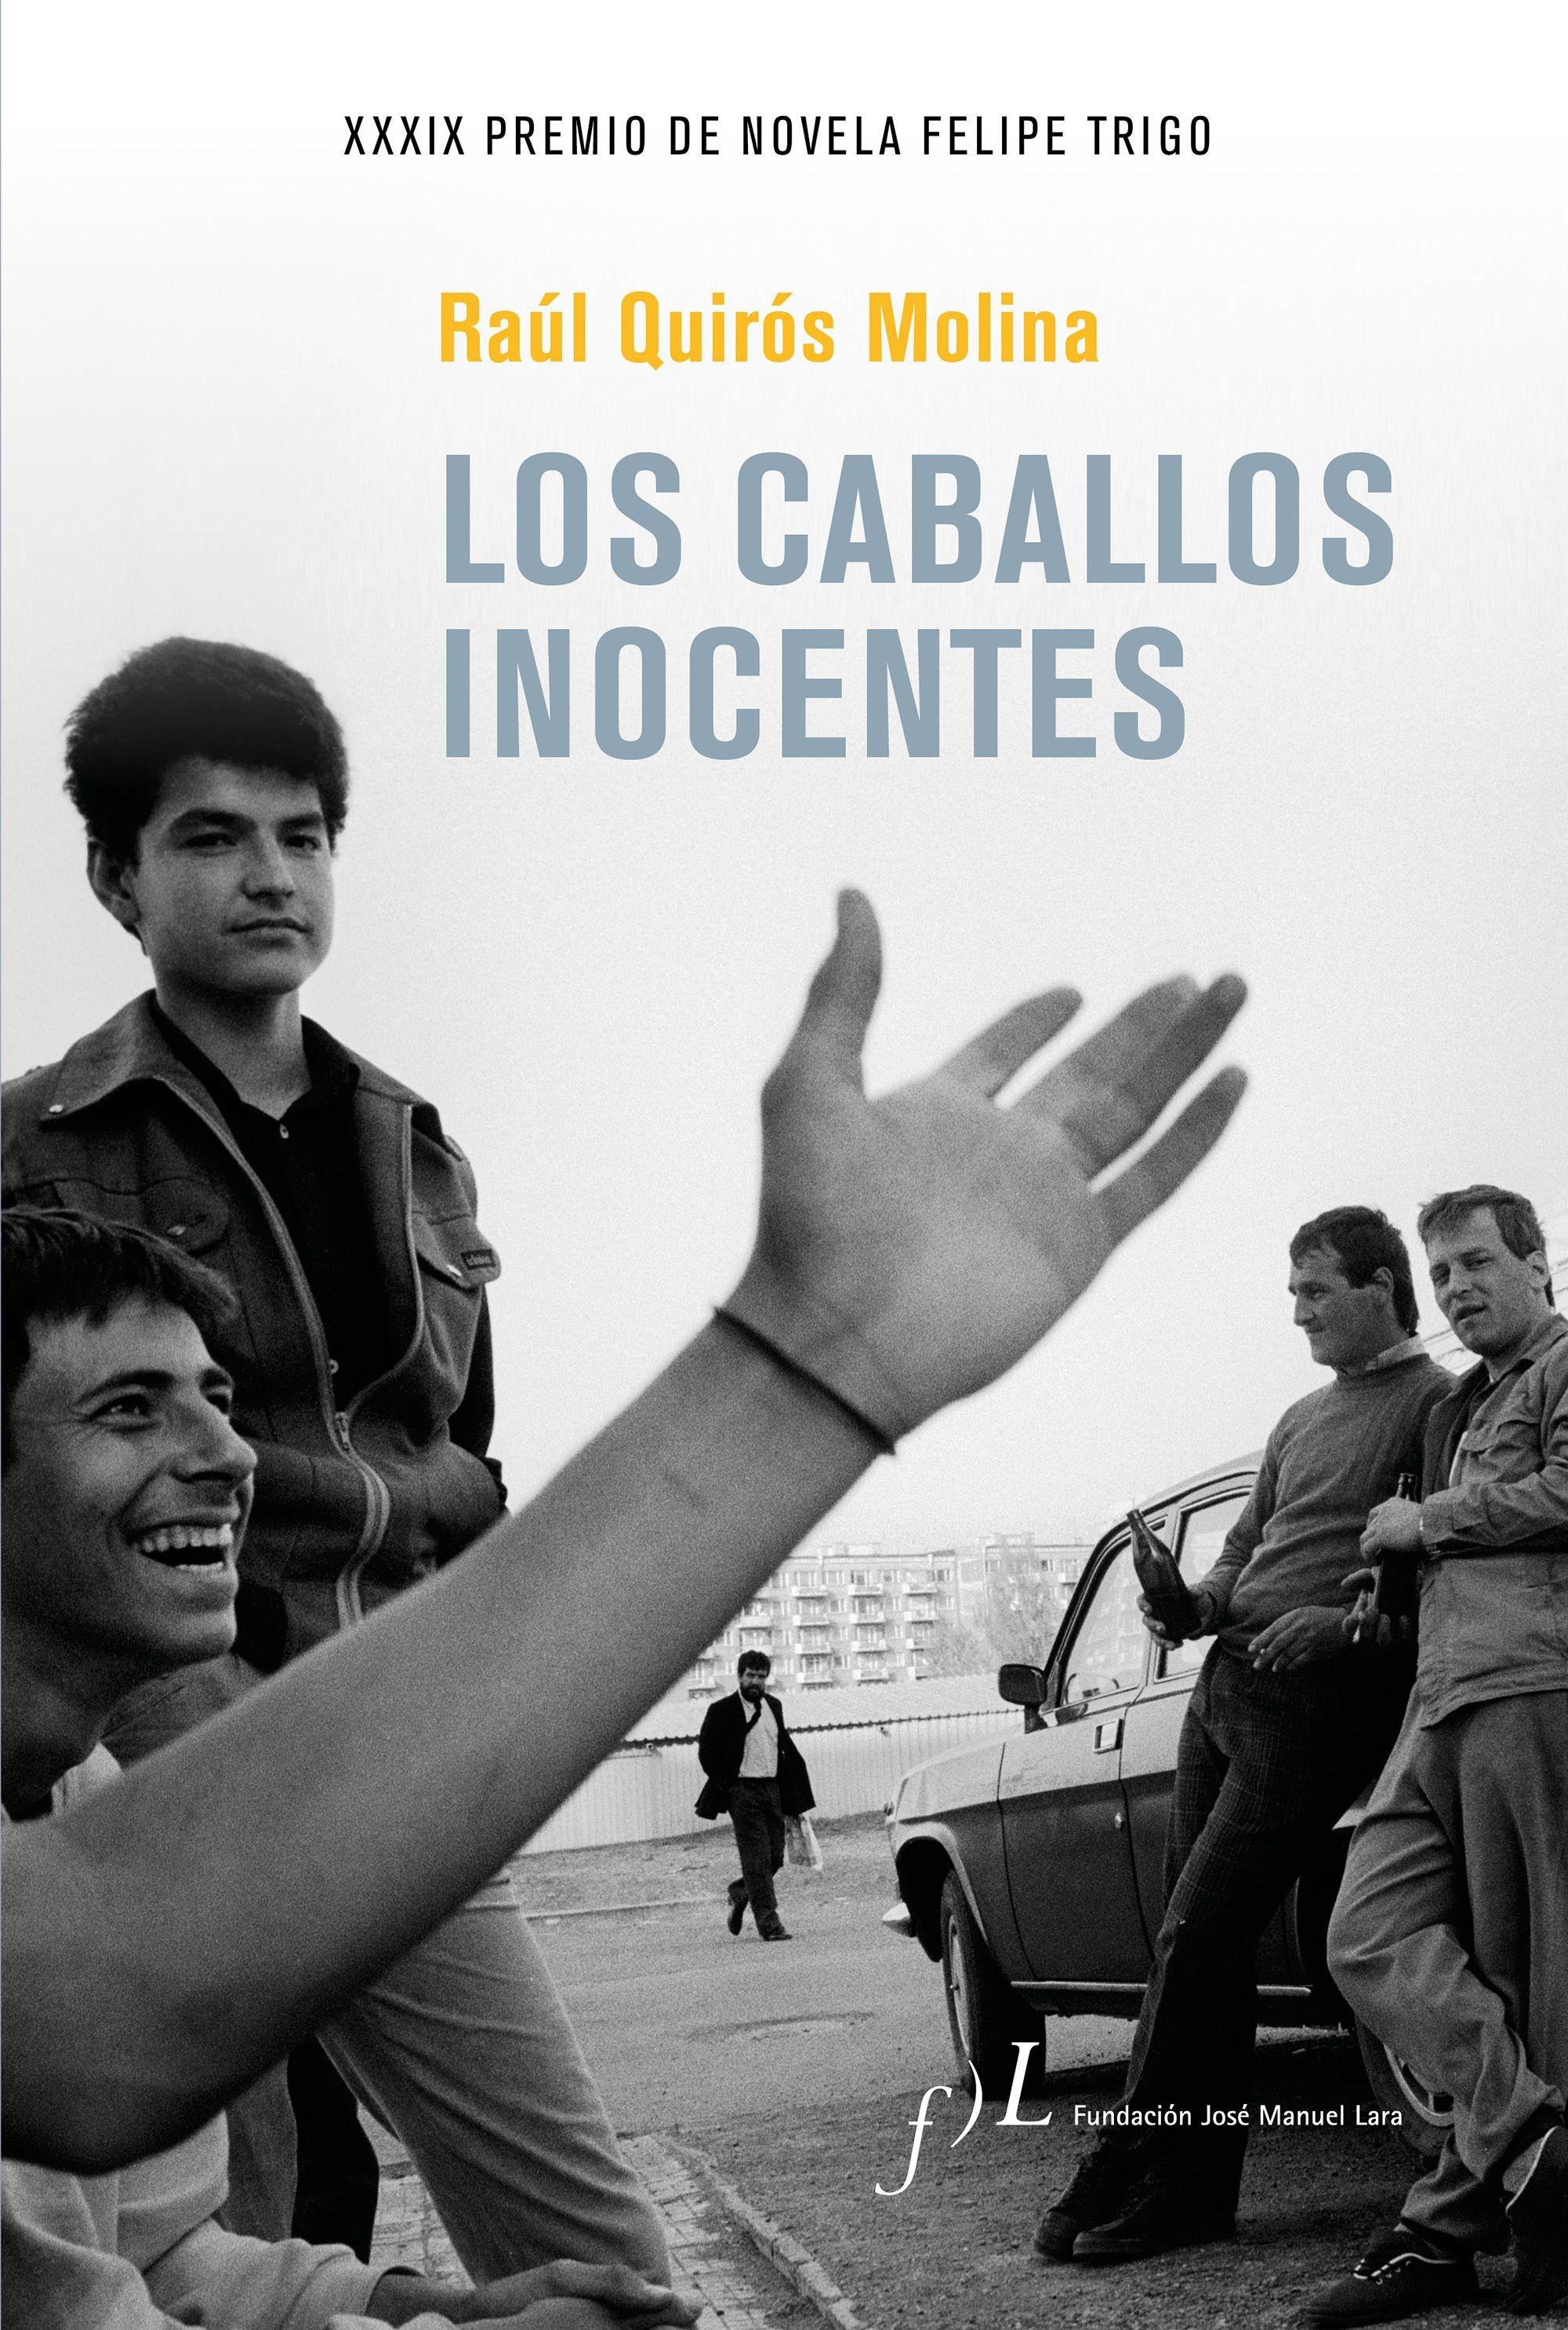 Los caballos inocentes "XXXIX Premio de Novela Felipe Trigo". 